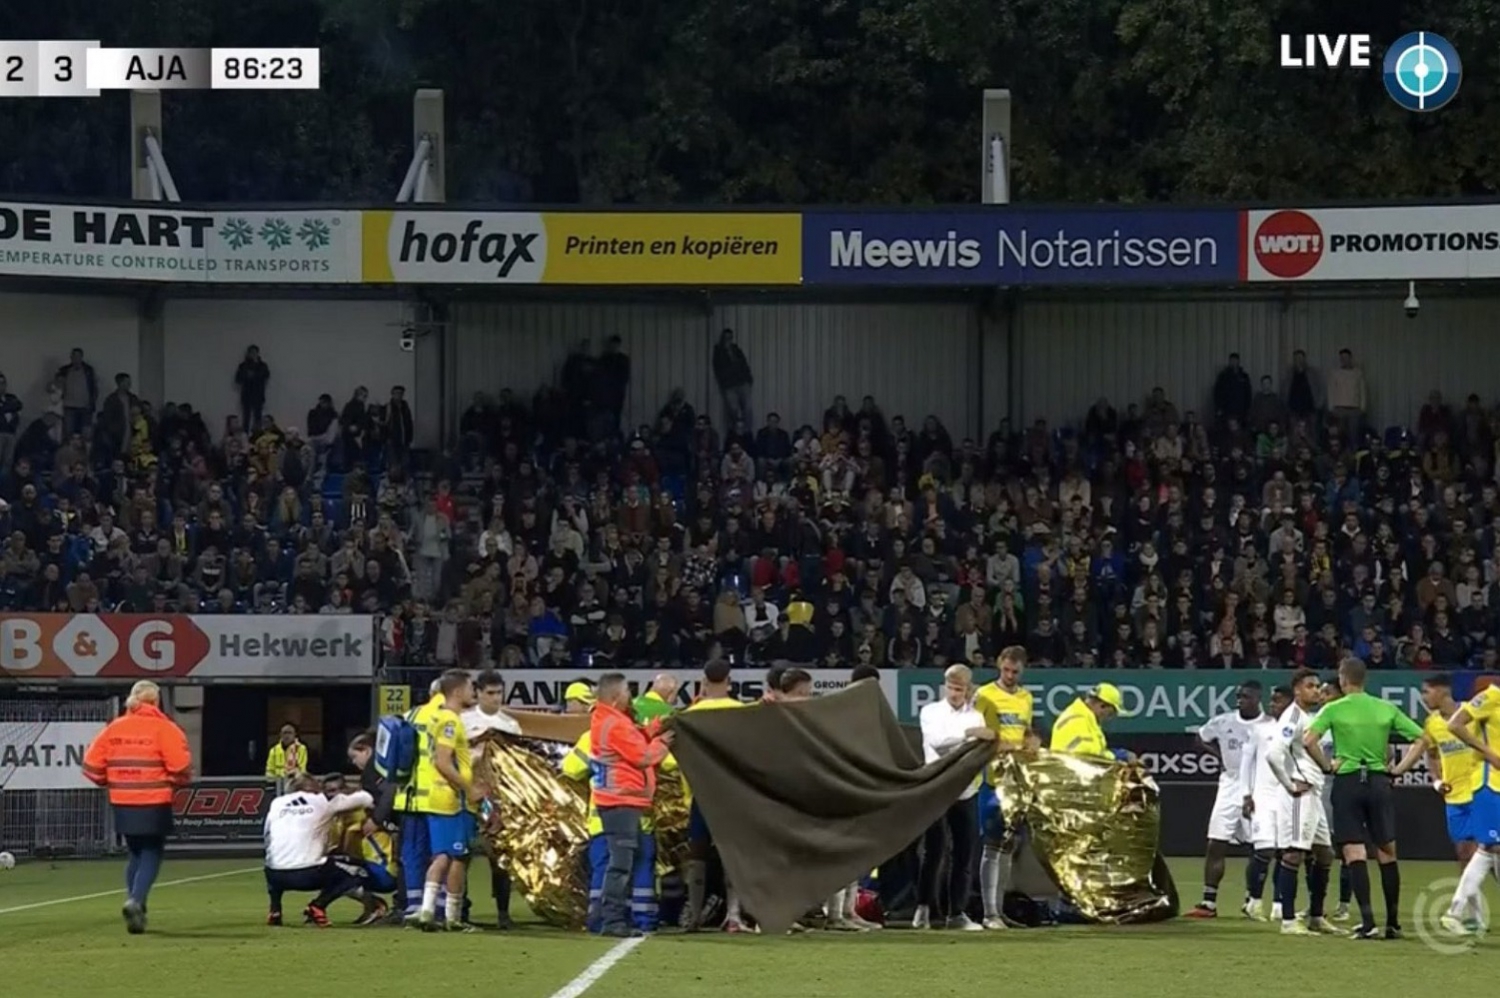 El partido entre Ajax y RKC Waalwijk terminó prematuramente.  Una herida aterradora